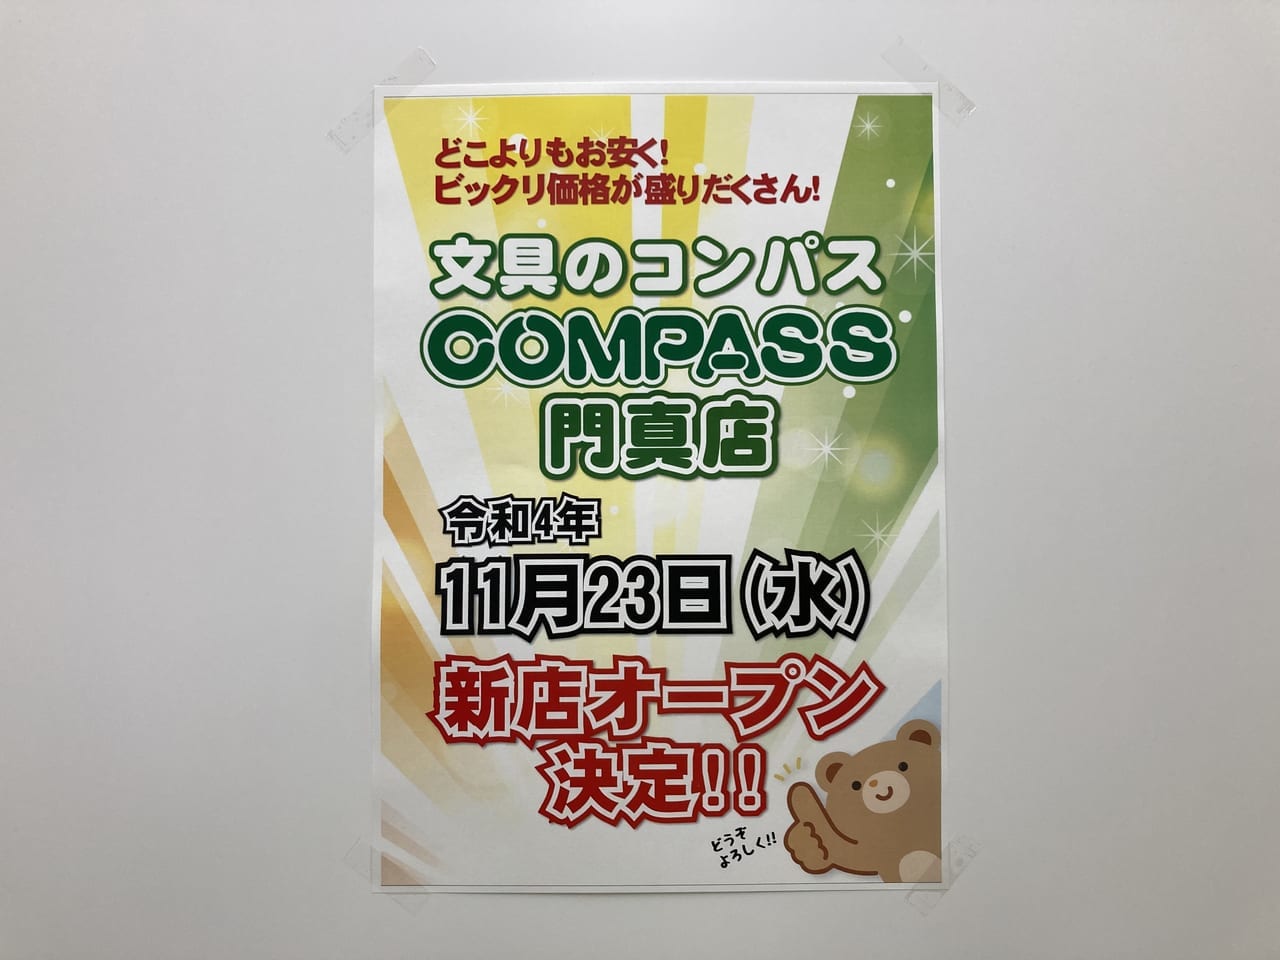 文具のコンパスCOMPASS門真店